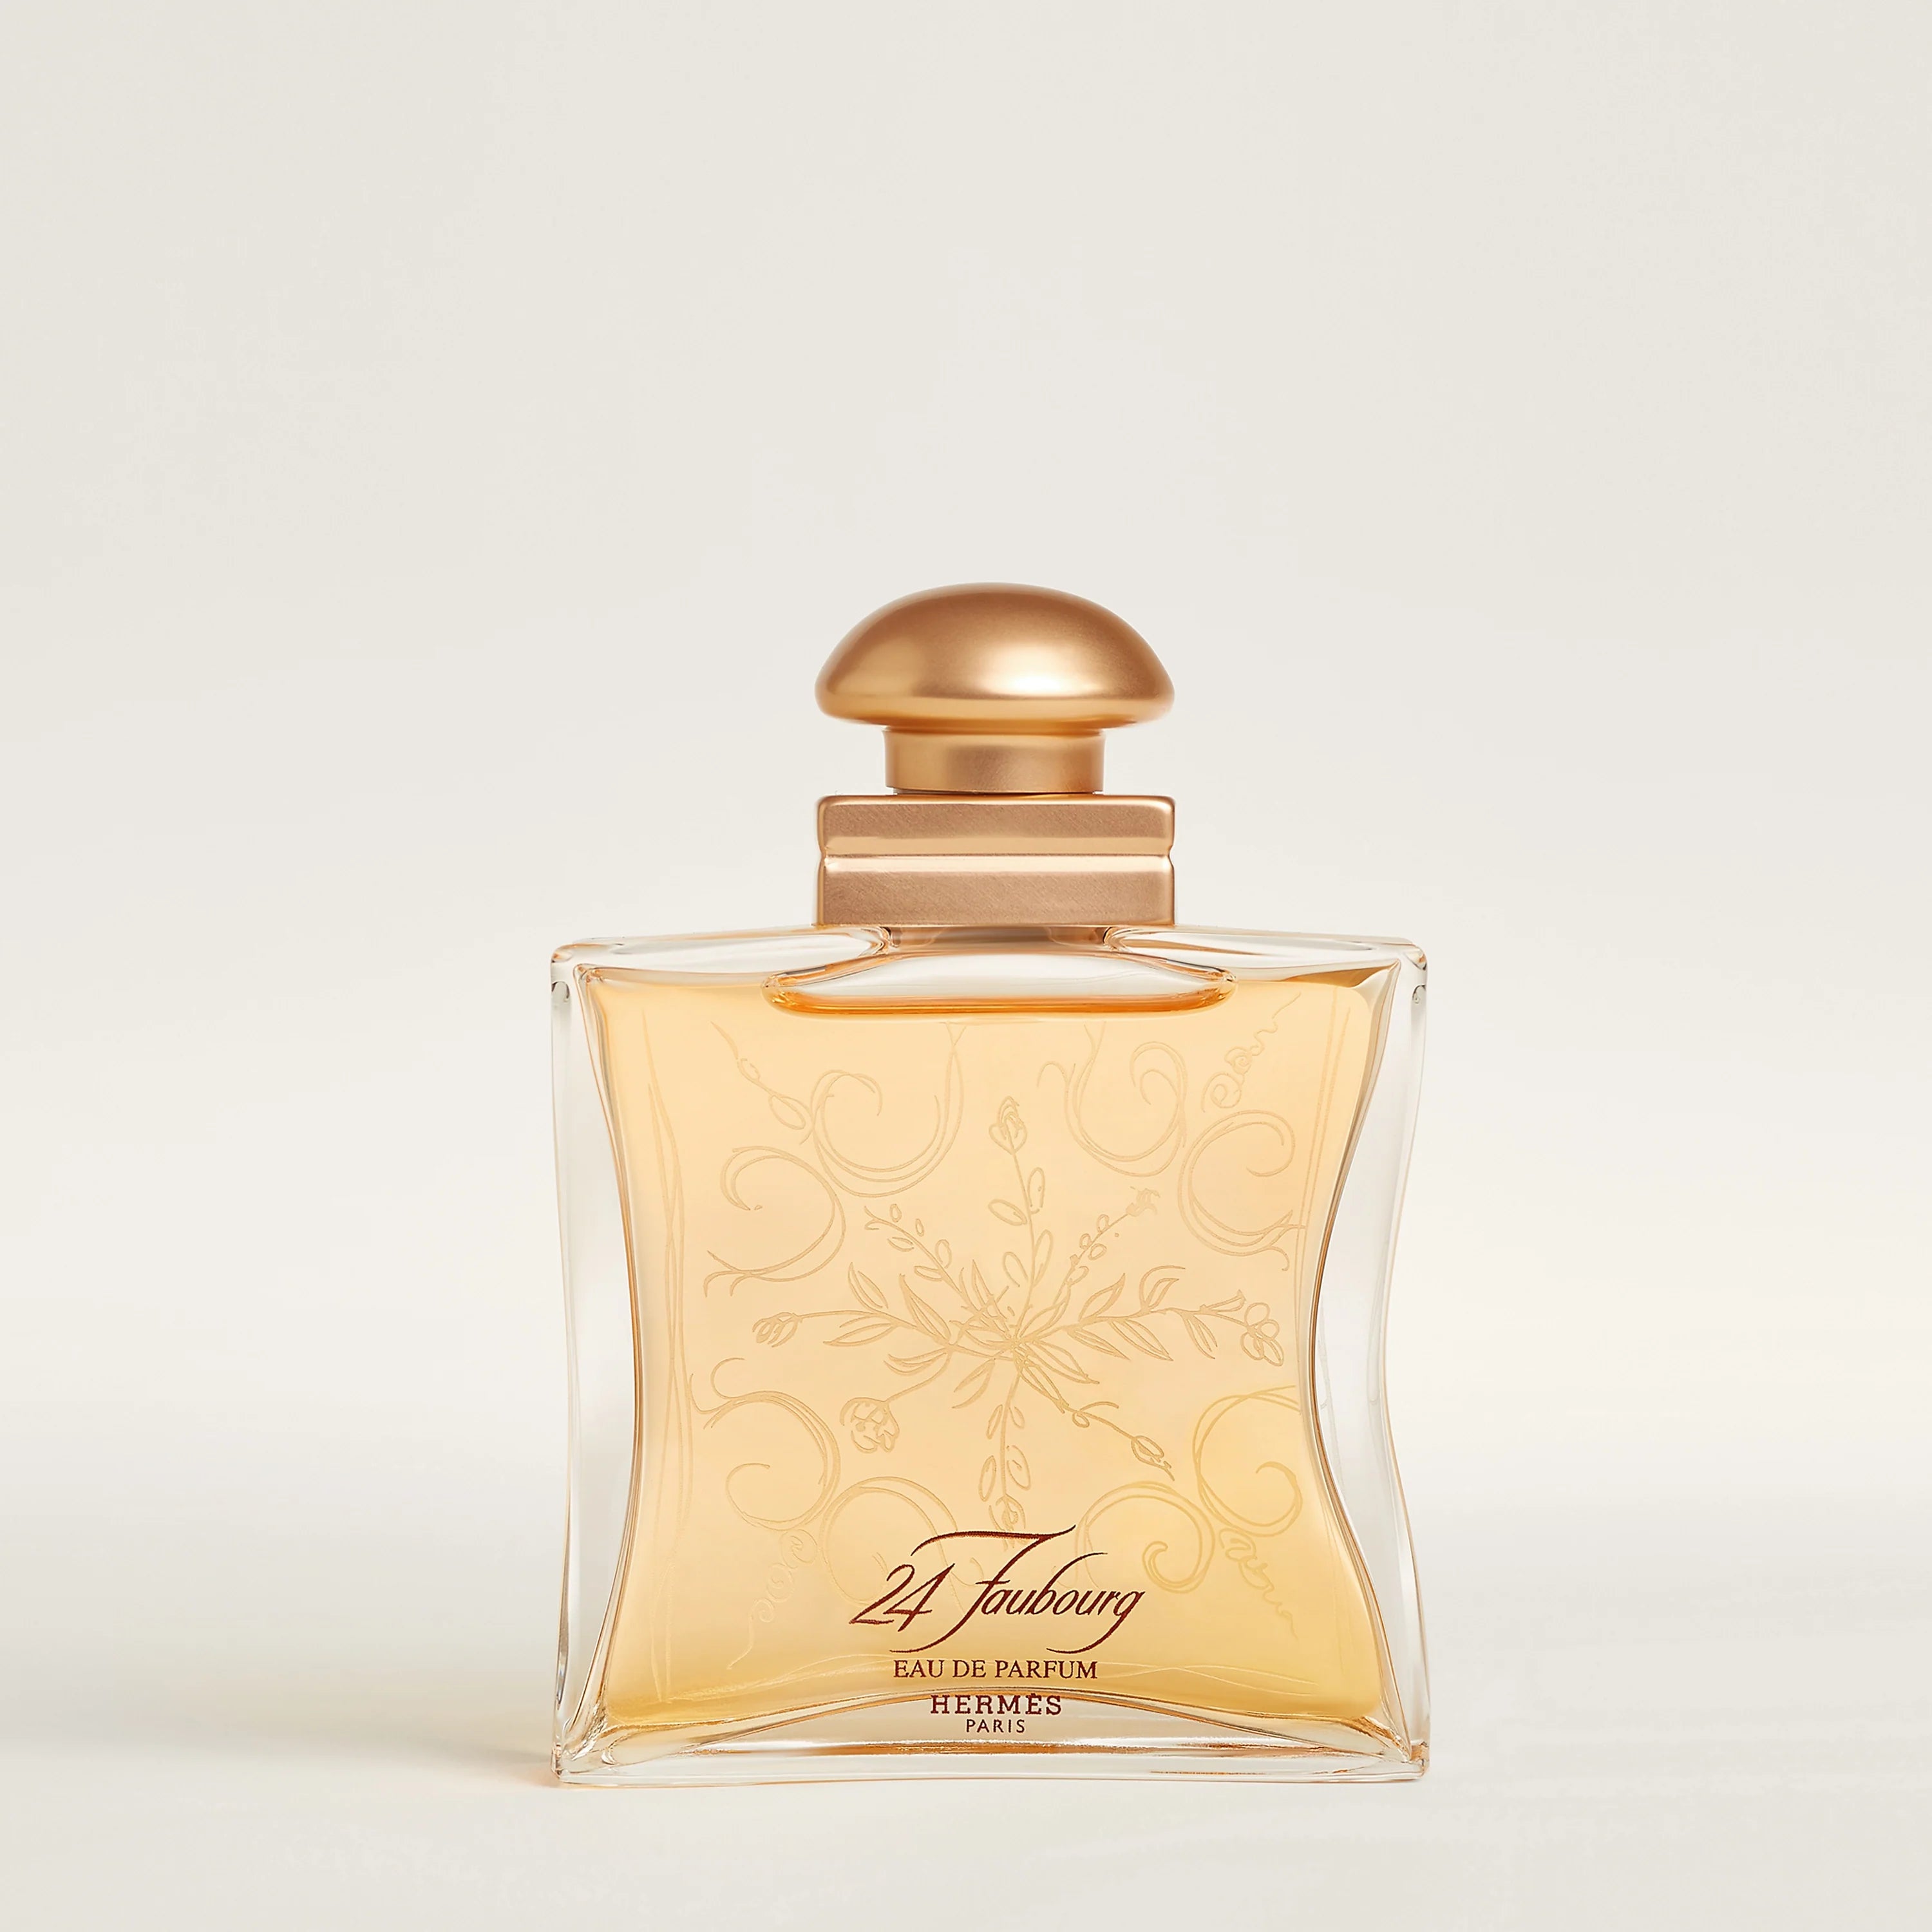 Hermès 24 Faubourg Eau de Parfum - Jasmine Parfums- [ean]